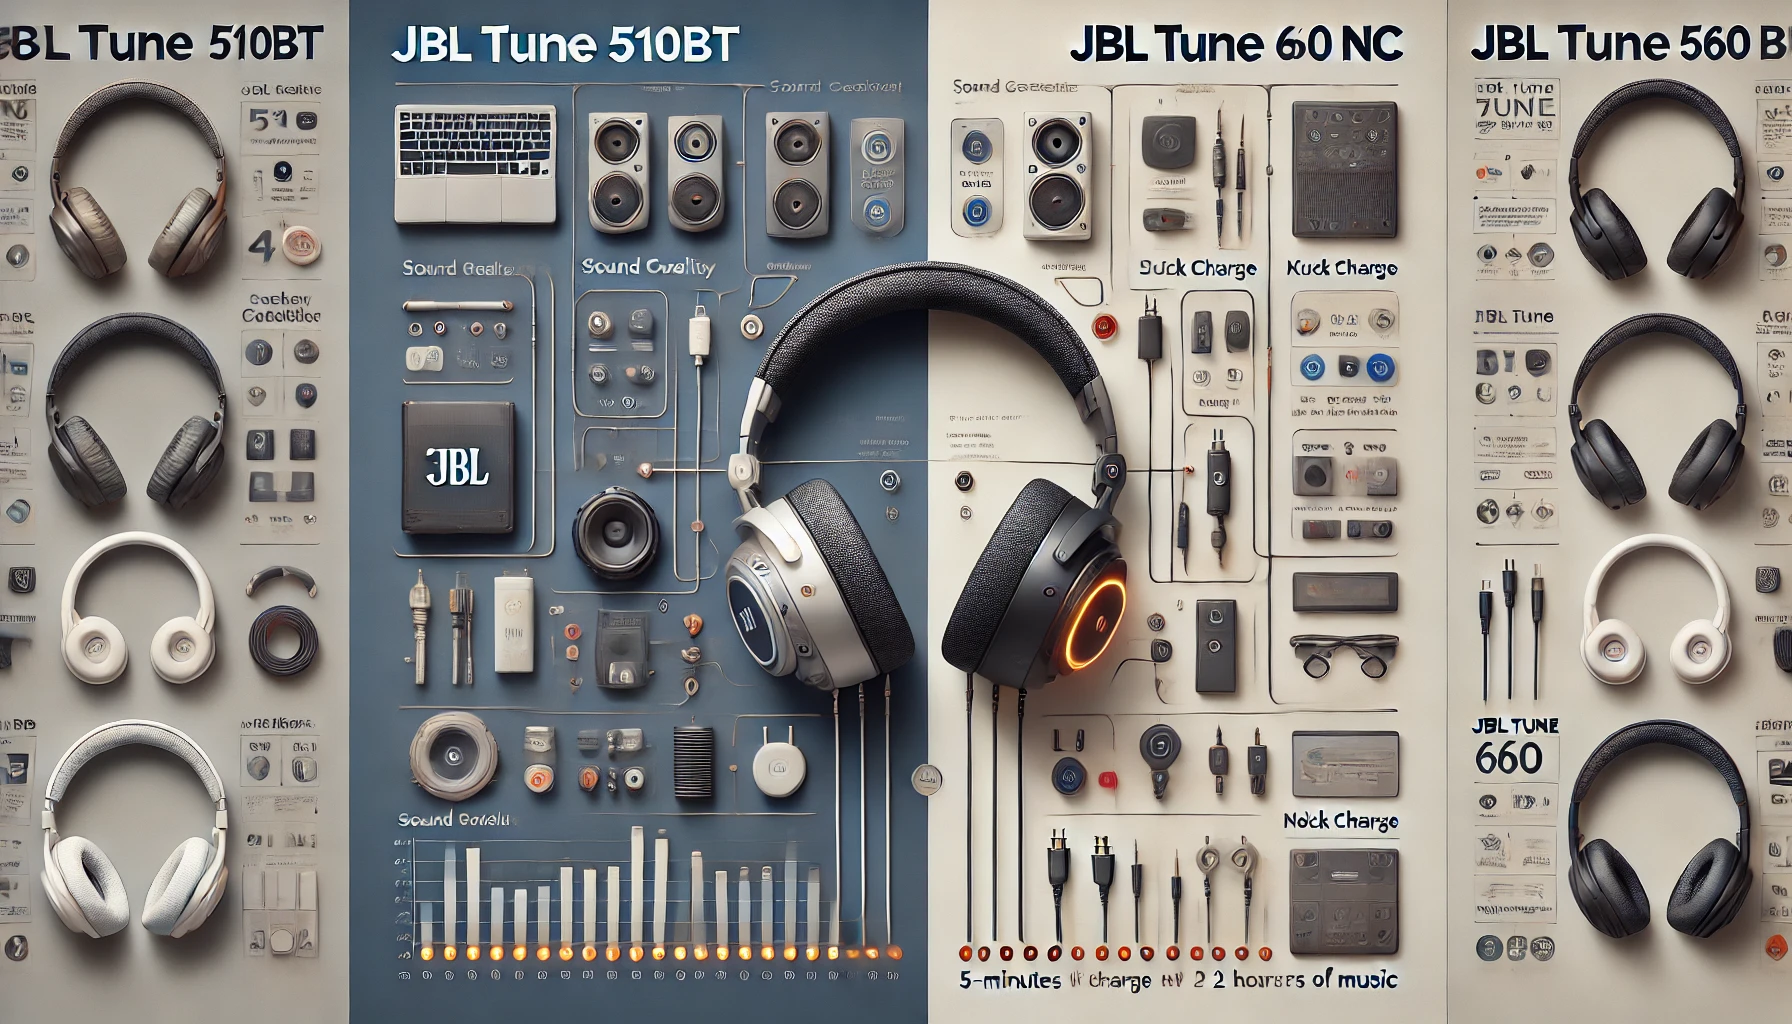 JBL Tune 510BT Vs JBL Tune 660 NC